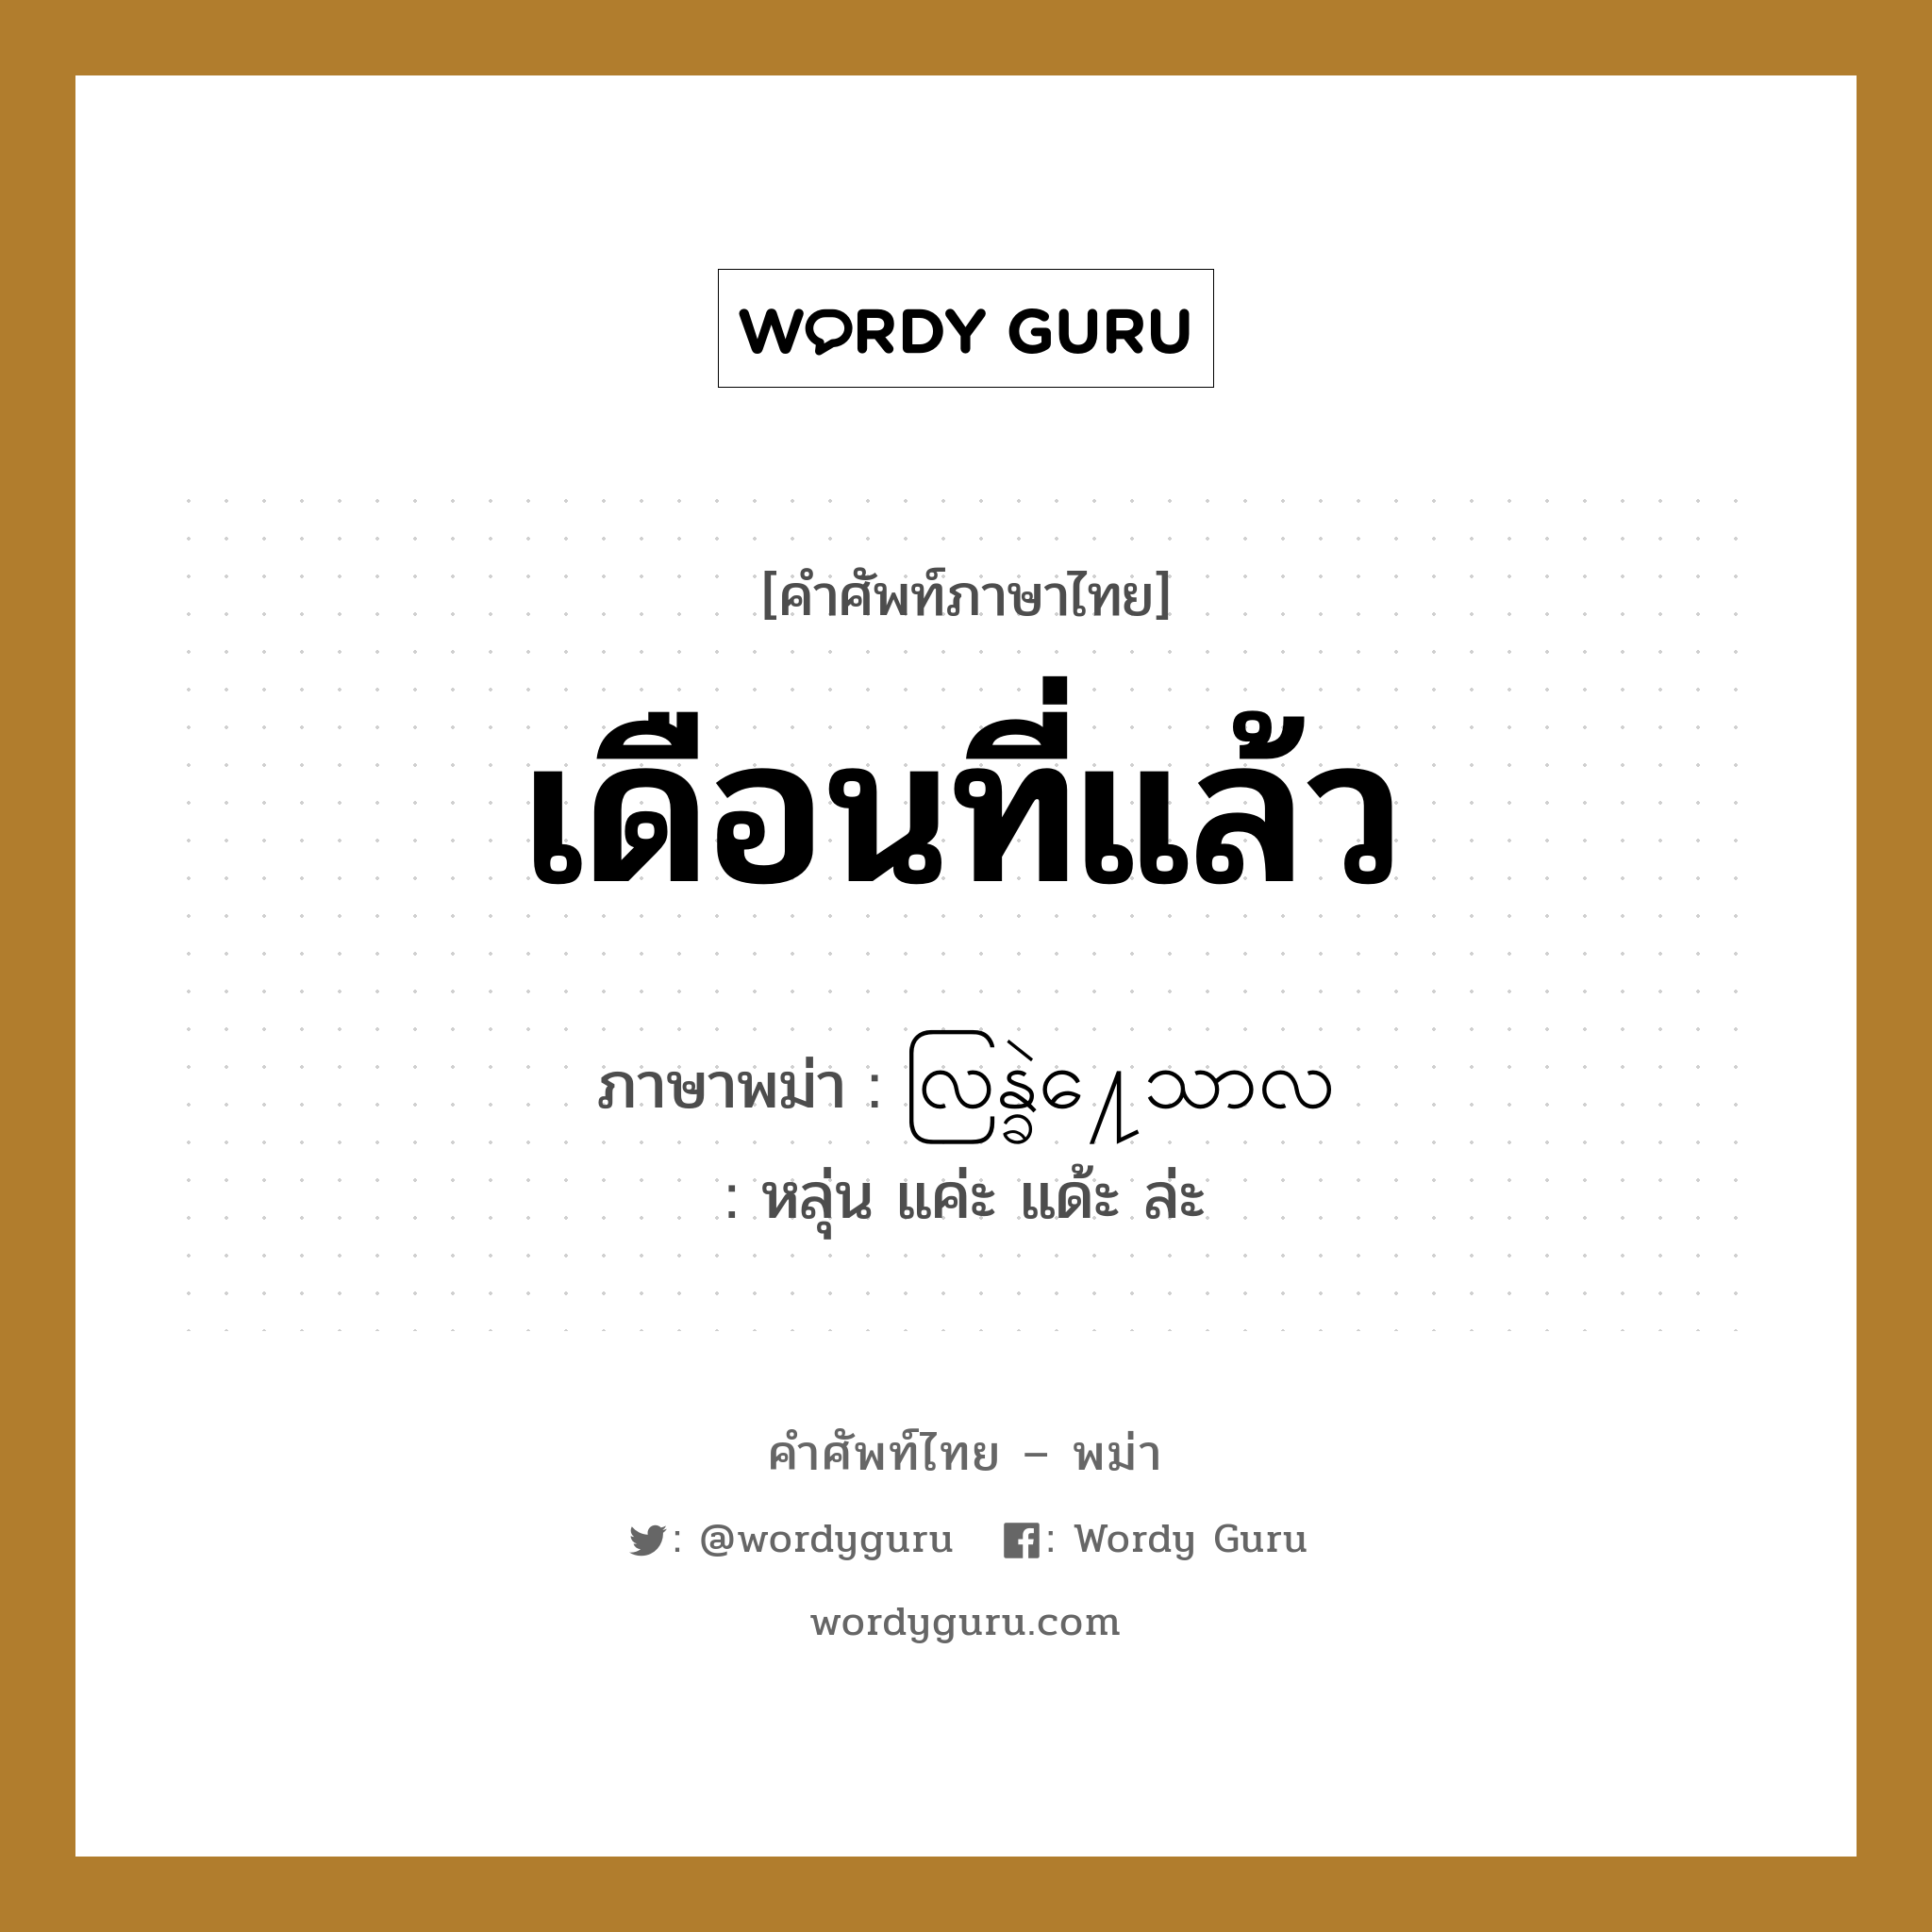 เดือนที่แล้ว ภาษาพม่าคืออะไร, คำศัพท์ภาษาไทย - พม่า เดือนที่แล้ว ภาษาพม่า လြန္ခဲ႔ေသာလ หมวด หมวดวัน เดือน ปี หลุ่น แค่ะ แด้ะ ล่ะ หมวด หมวดวัน เดือน ปี